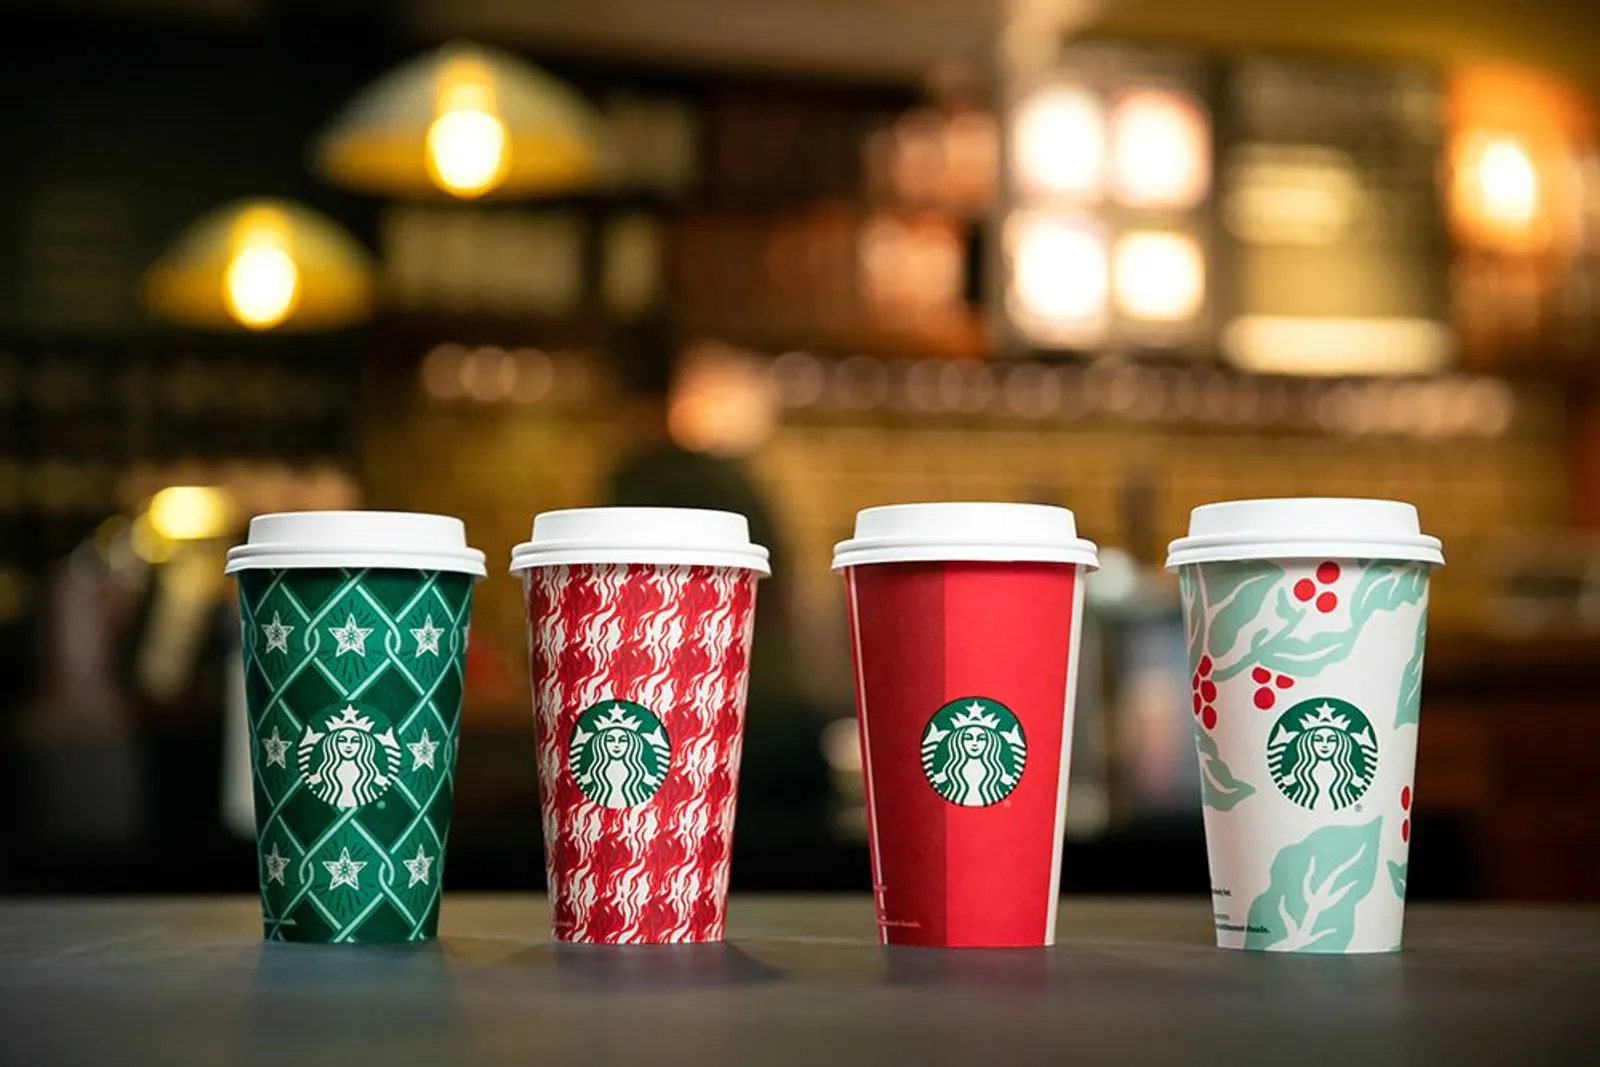 Sambut Musim Liburan, Starbucks Rilis Minuman dan Desain Cup Terbaru